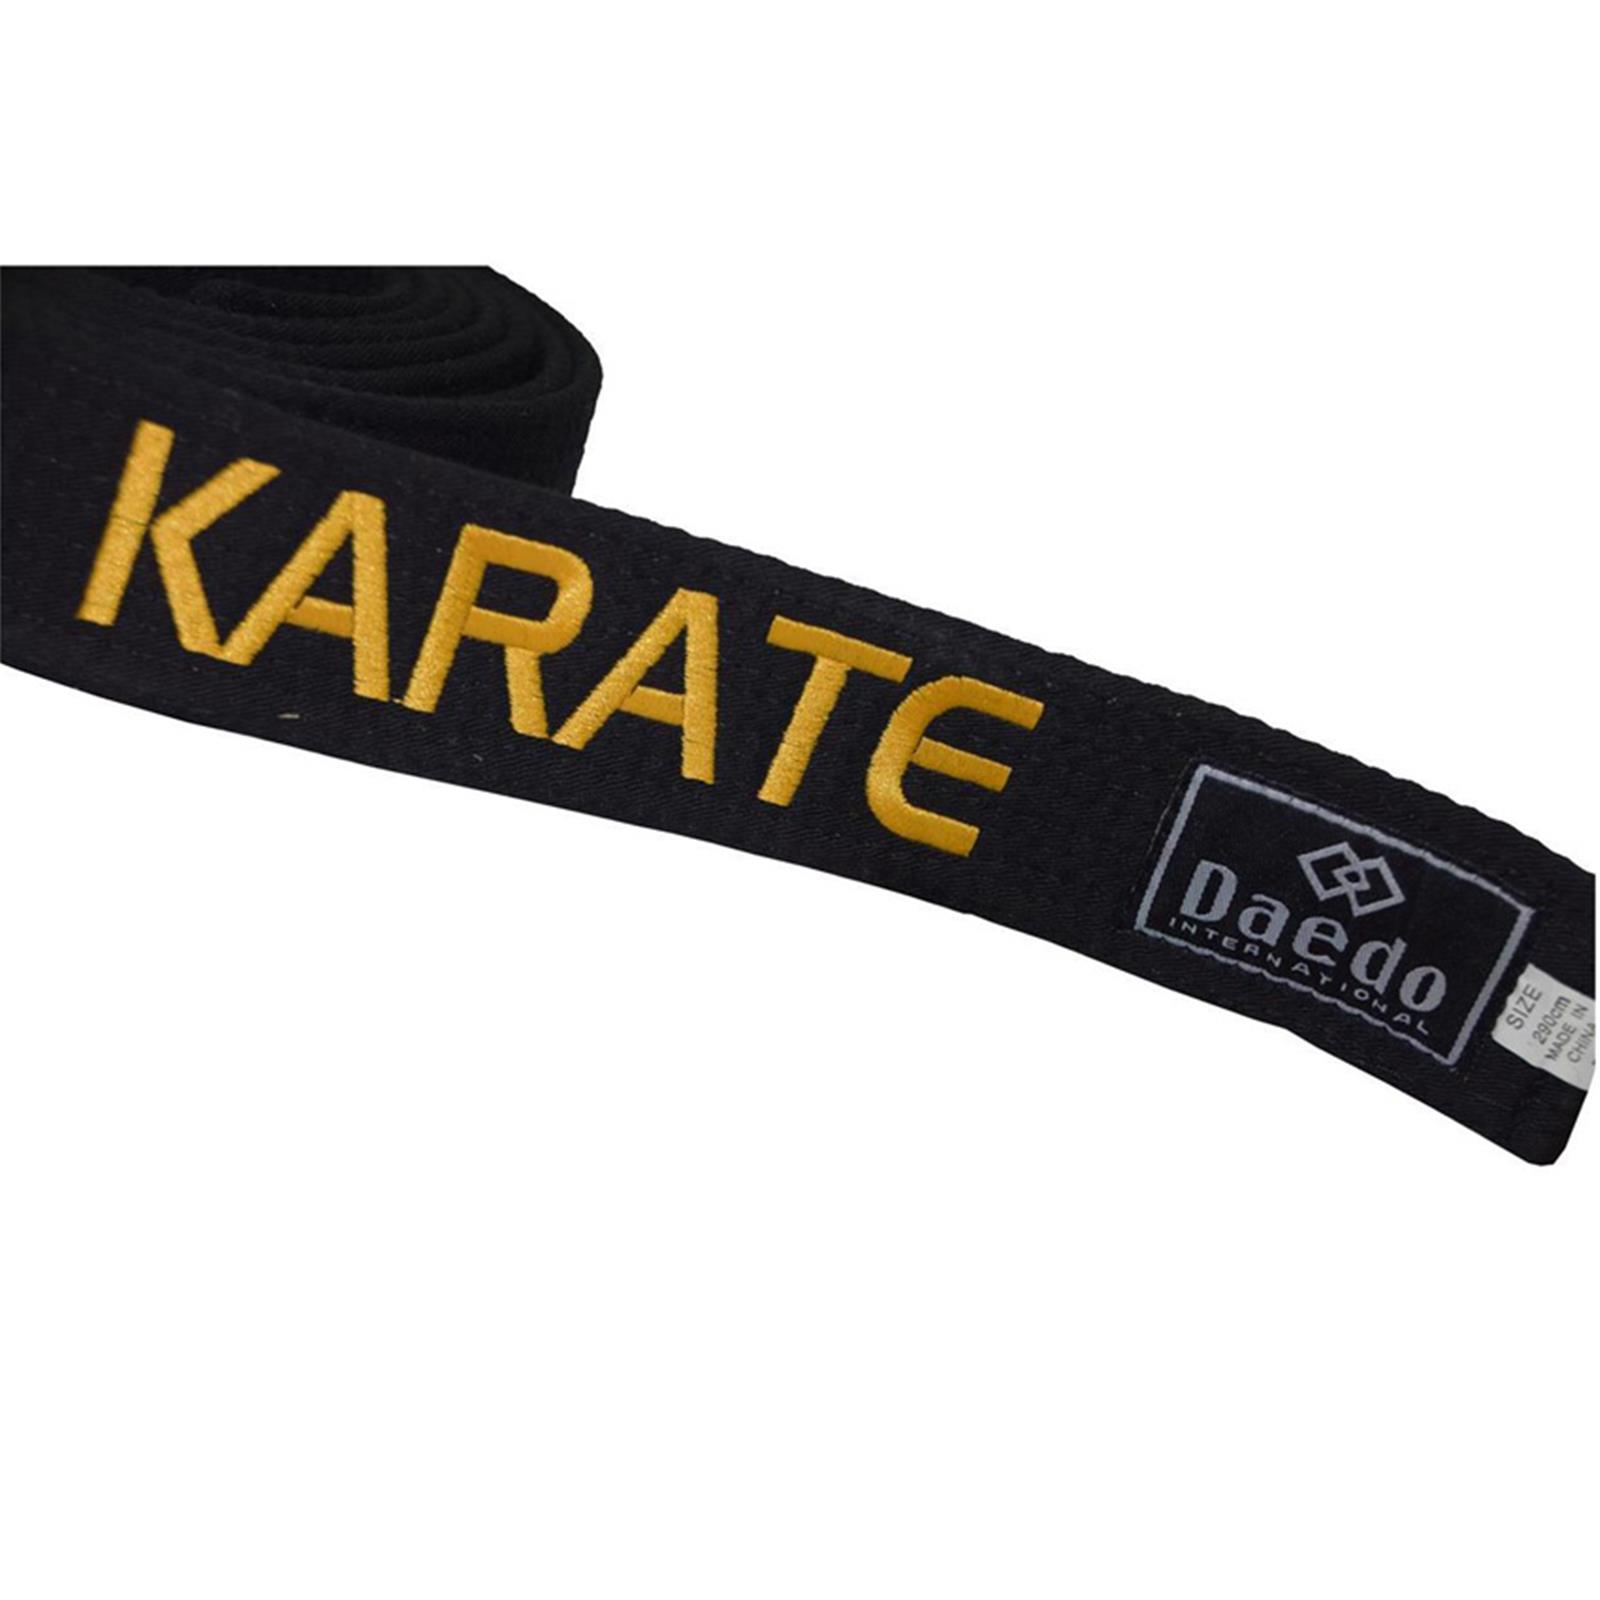 Dae Do Cintura Nera Karate ricamata Oro personalizzata (ALTEZZA 4,5 CM - Tag. 2° CM  245)